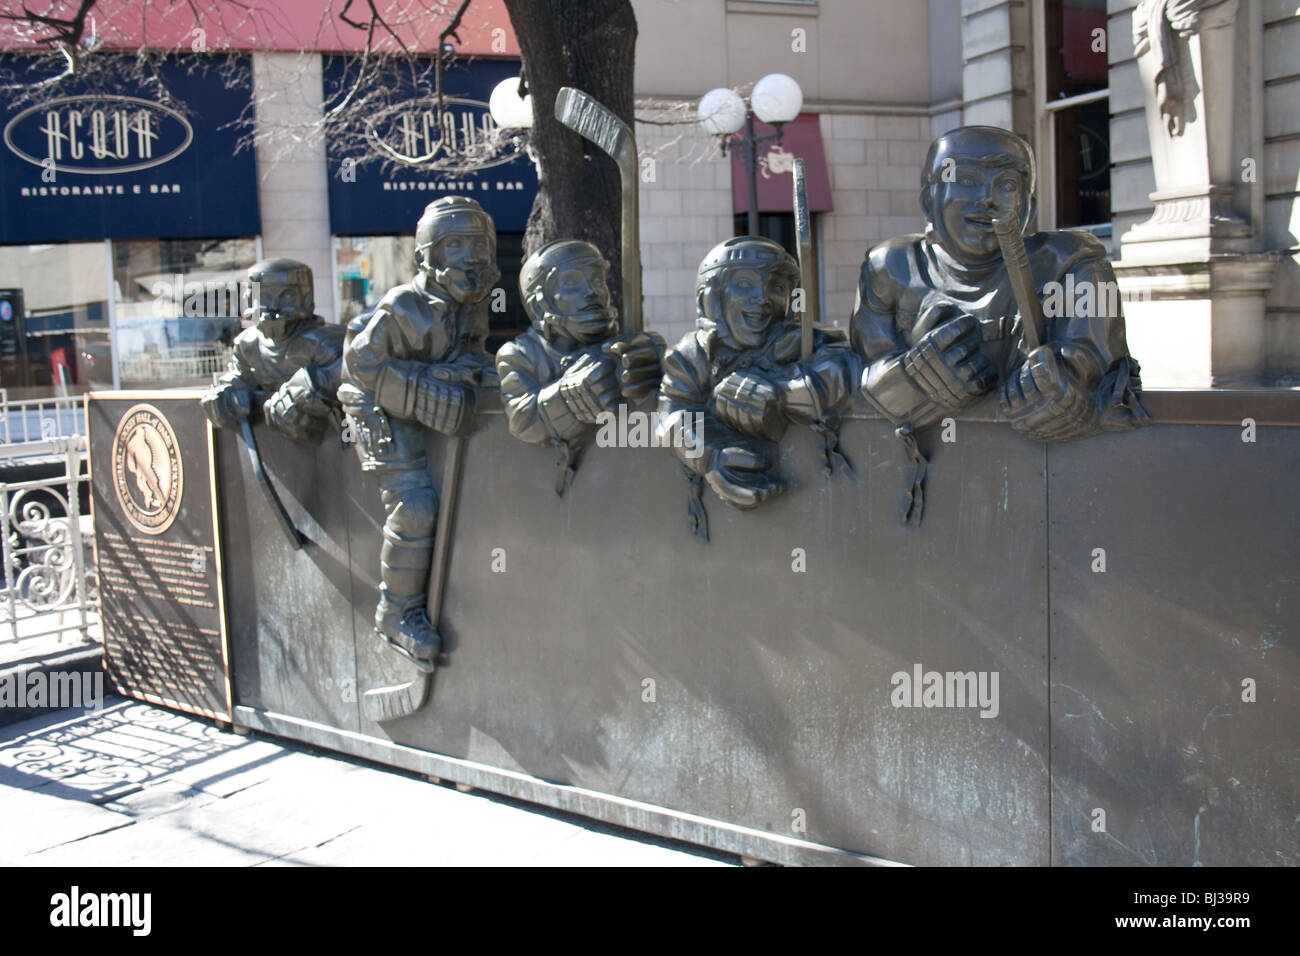 Sculptures à l'extérieur de la renommée du hockey à Toronto ontario canada Banque D'Images